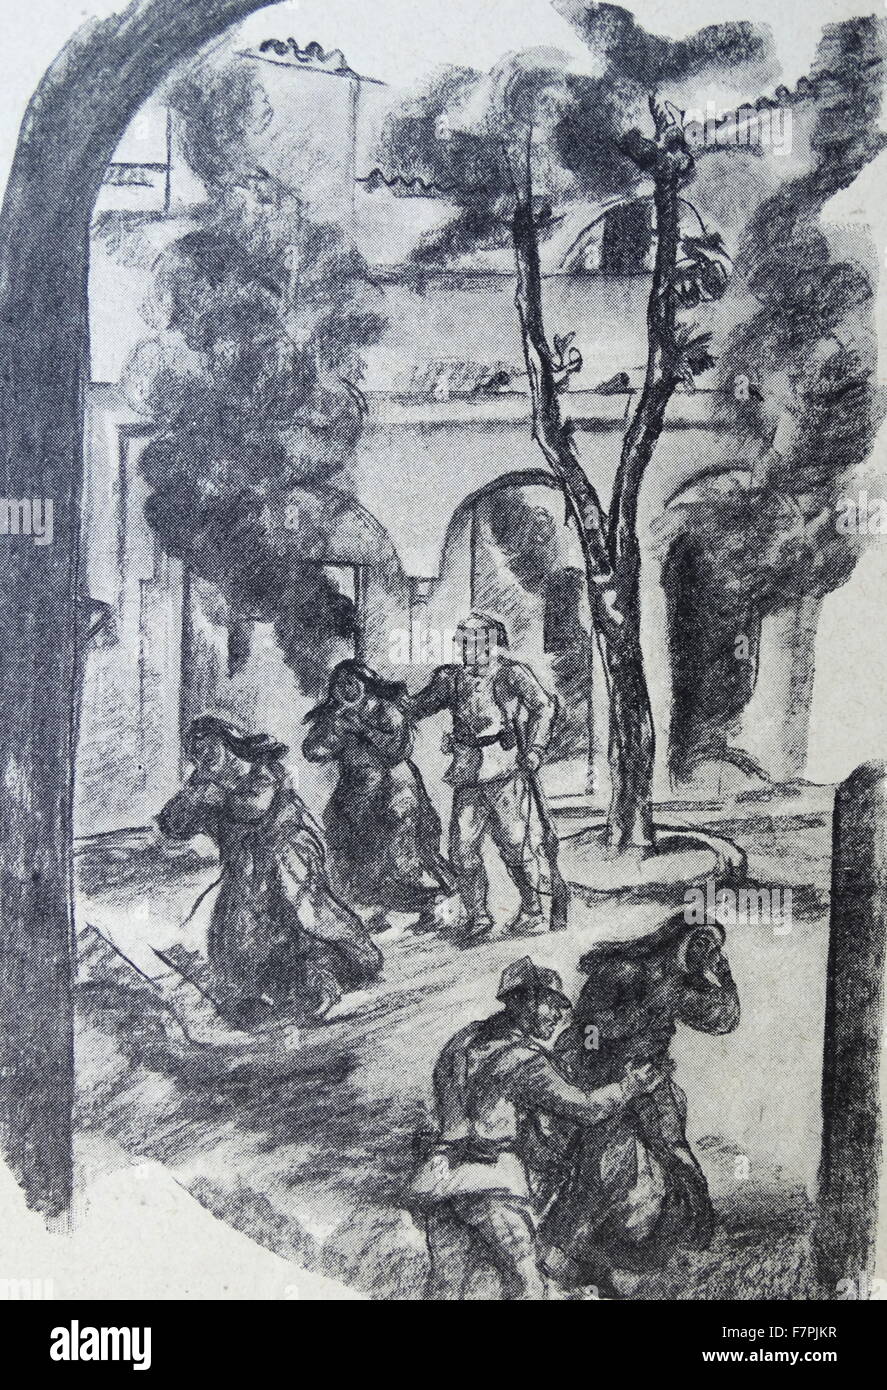 Illustrazione raffigurante Guardia Civile evacuare le suore cattoliche da una barenatura convento. Datata 1937 Foto Stock